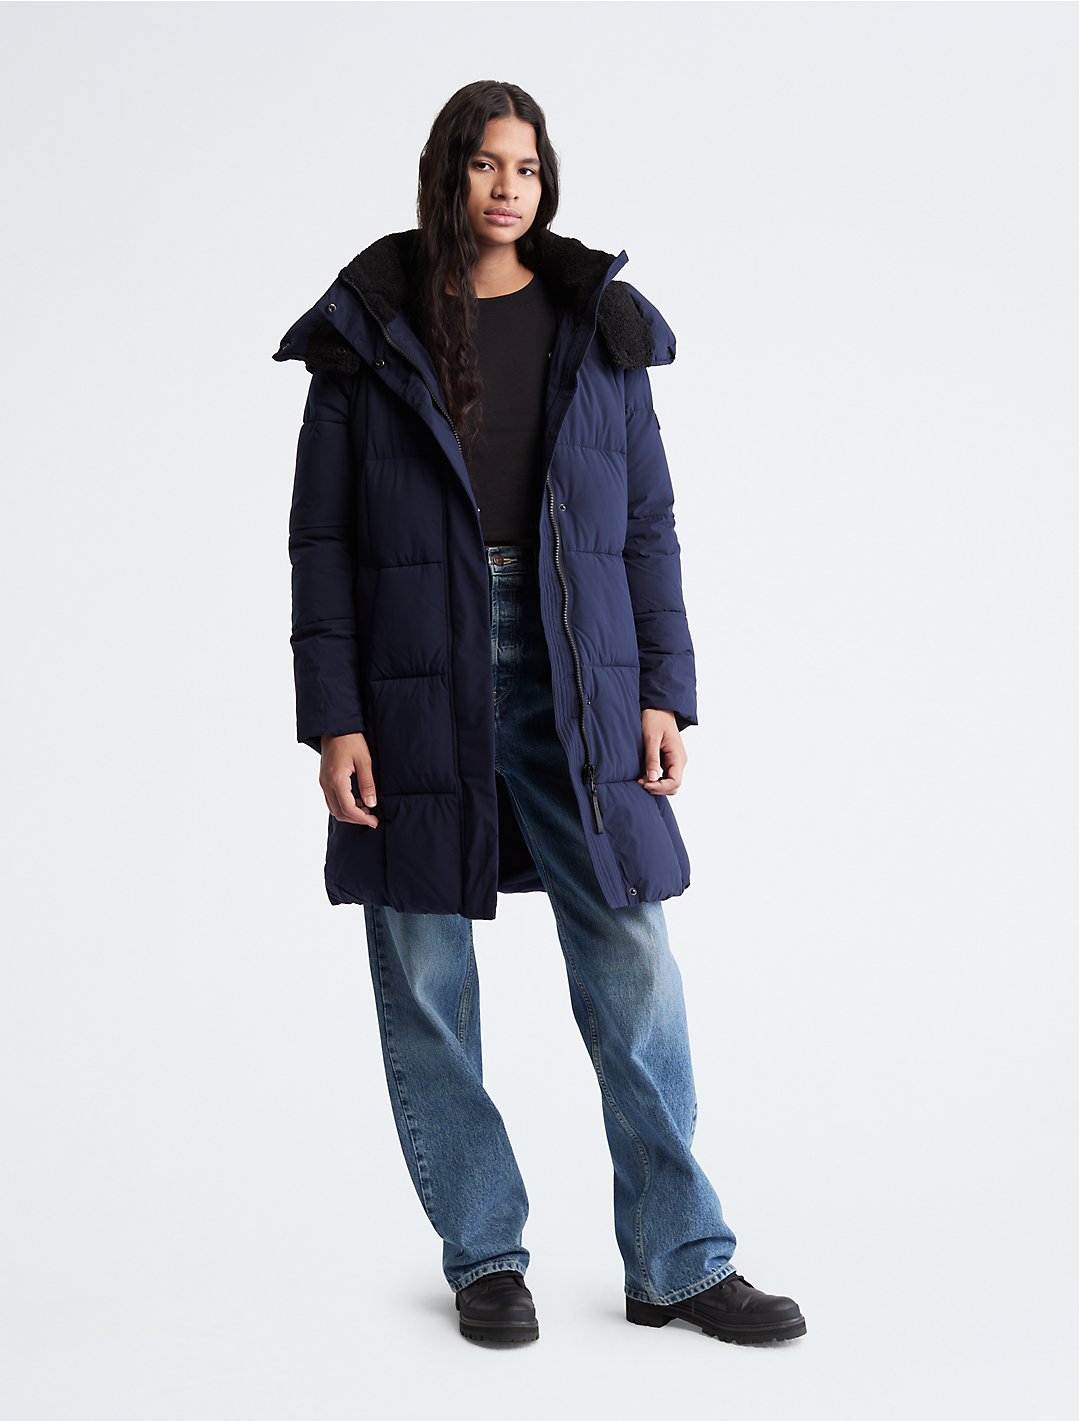 goedkeuren Wegrijden Asser Hooded Puffer Jacket | Calvin Klein® USA